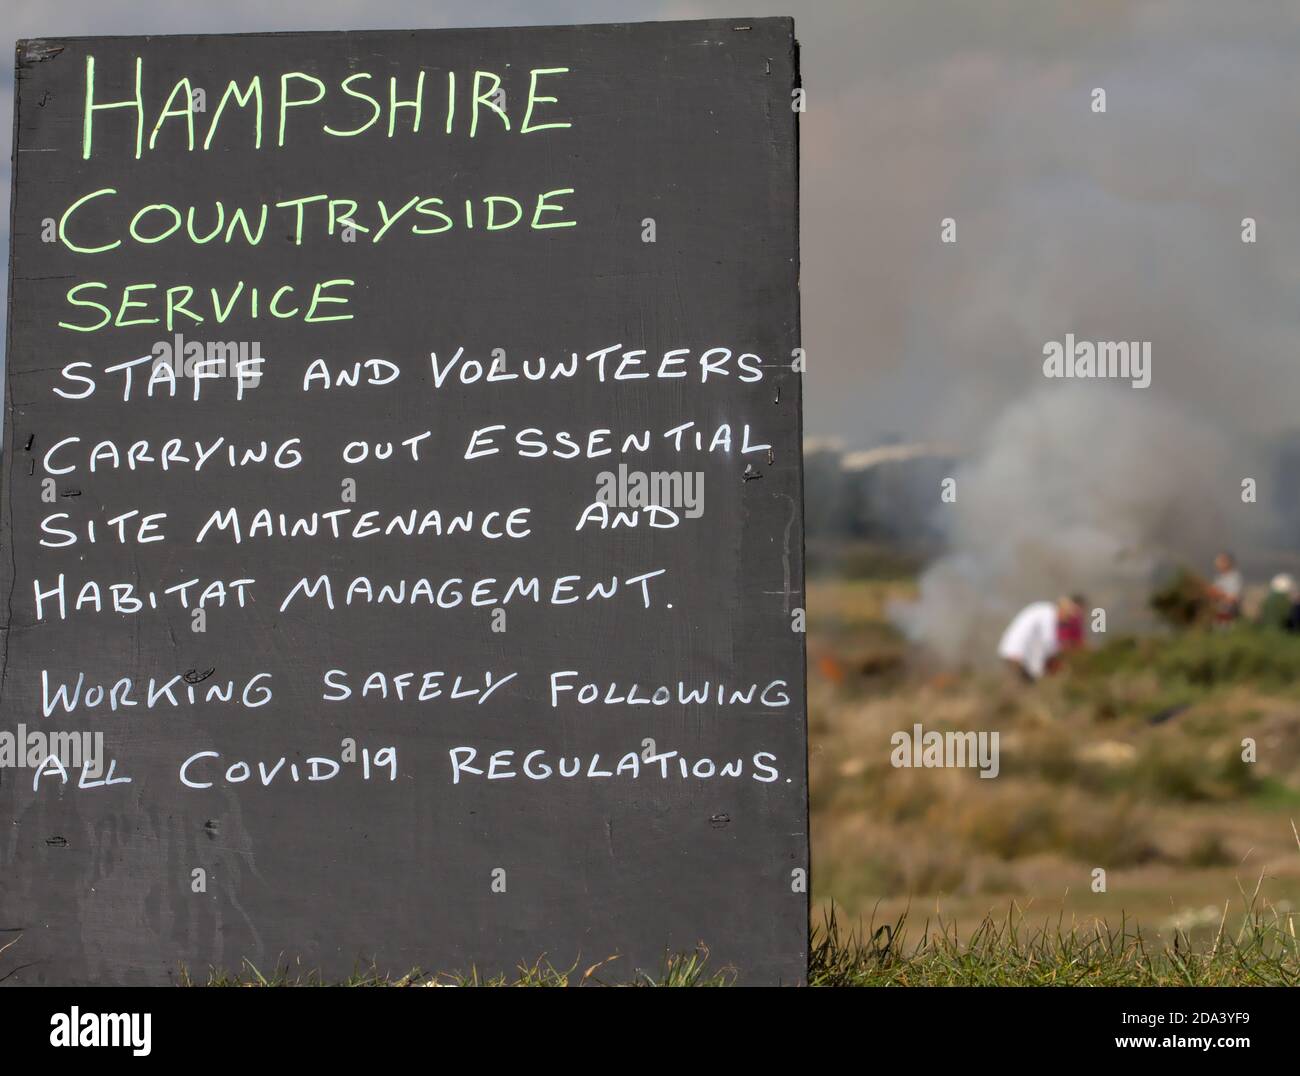 Cartello di Hampshire Countryside Service Avviso di manutenzione del sito E Habitat Management all'interno di Covid Regulations con i lavoratori e UN Fuoco i Foto Stock